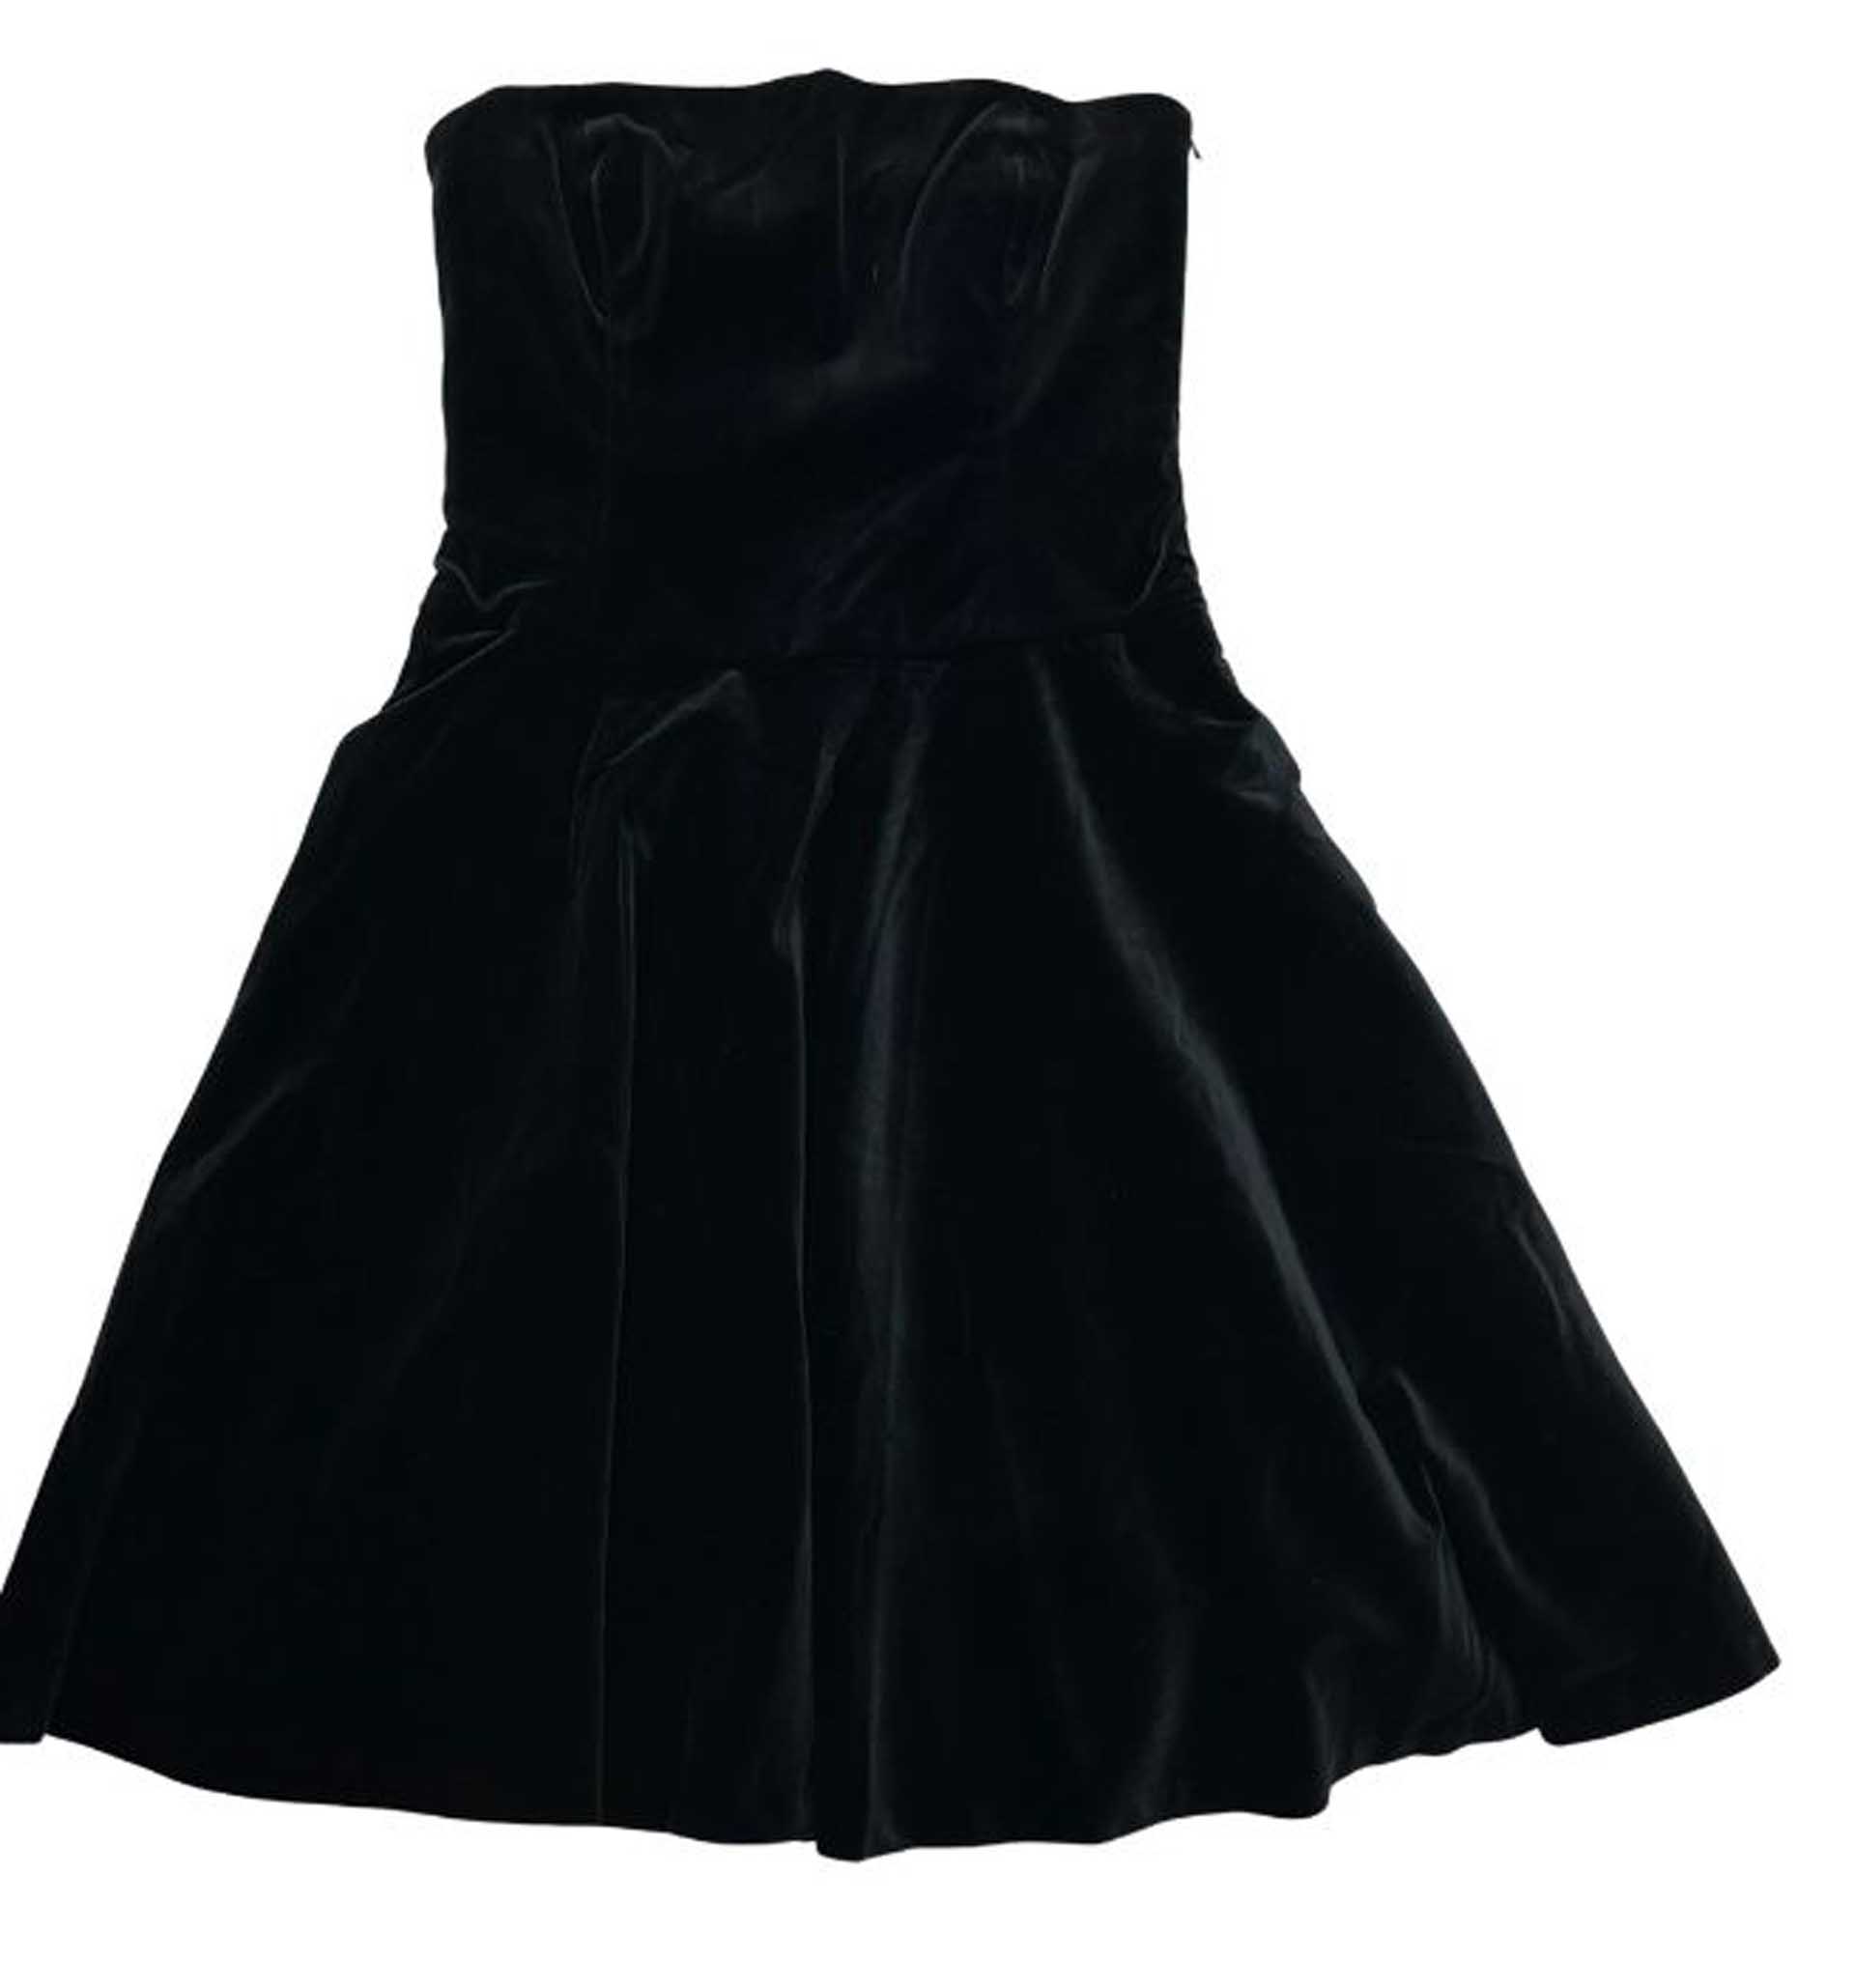 Michelle Salas ha puesto a la venta gran parte de su ropa, entre otros, un vestido color negro de firma